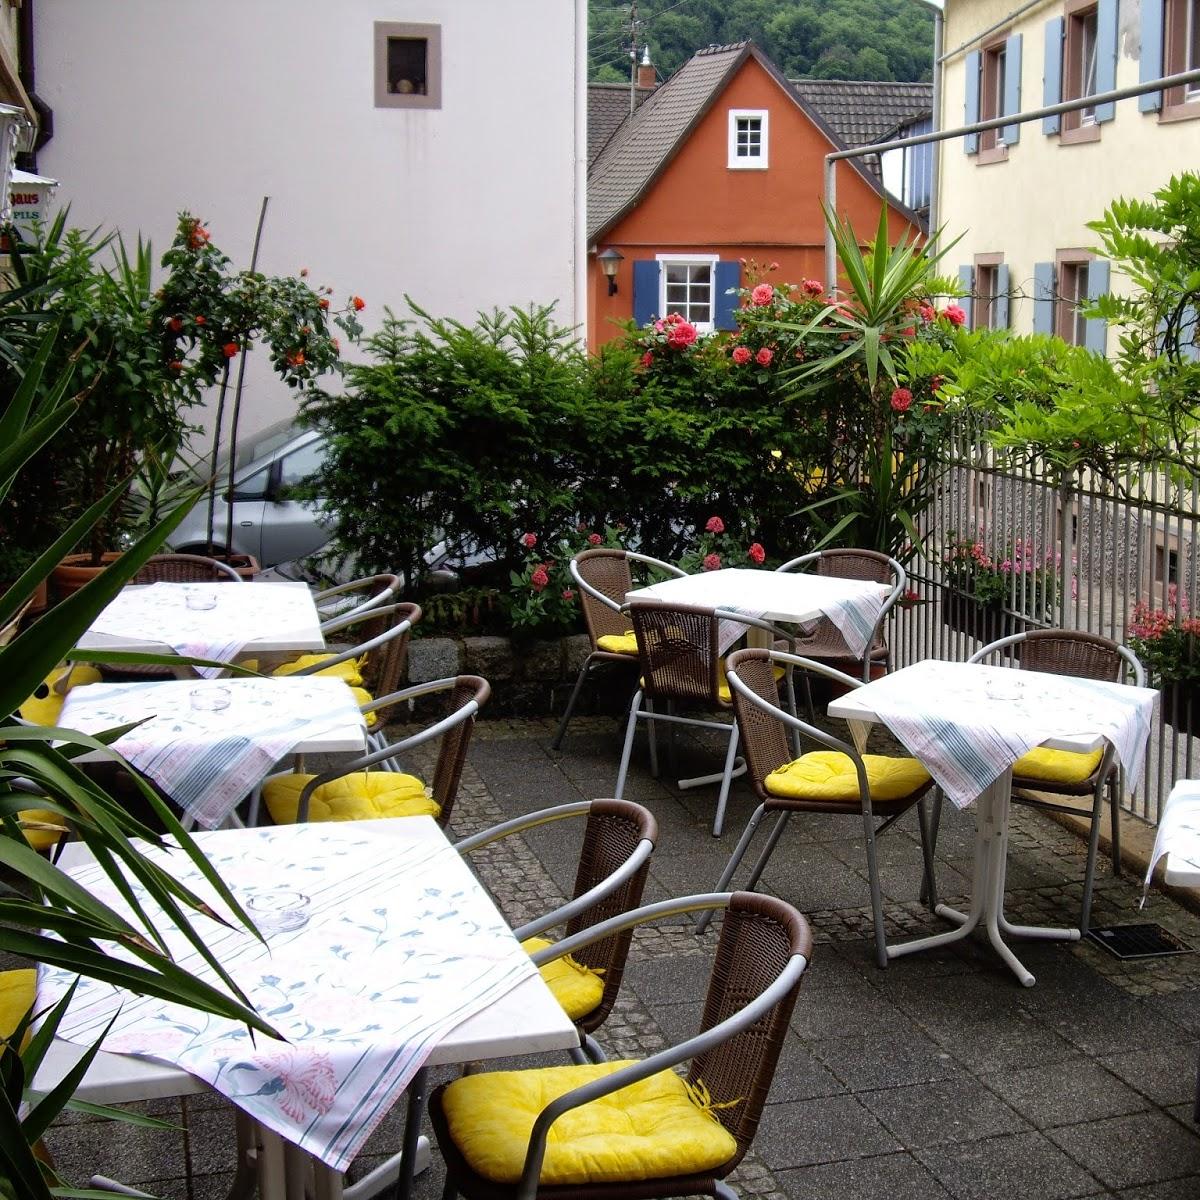 Restaurant "Zur Schnecke" in  Kandern